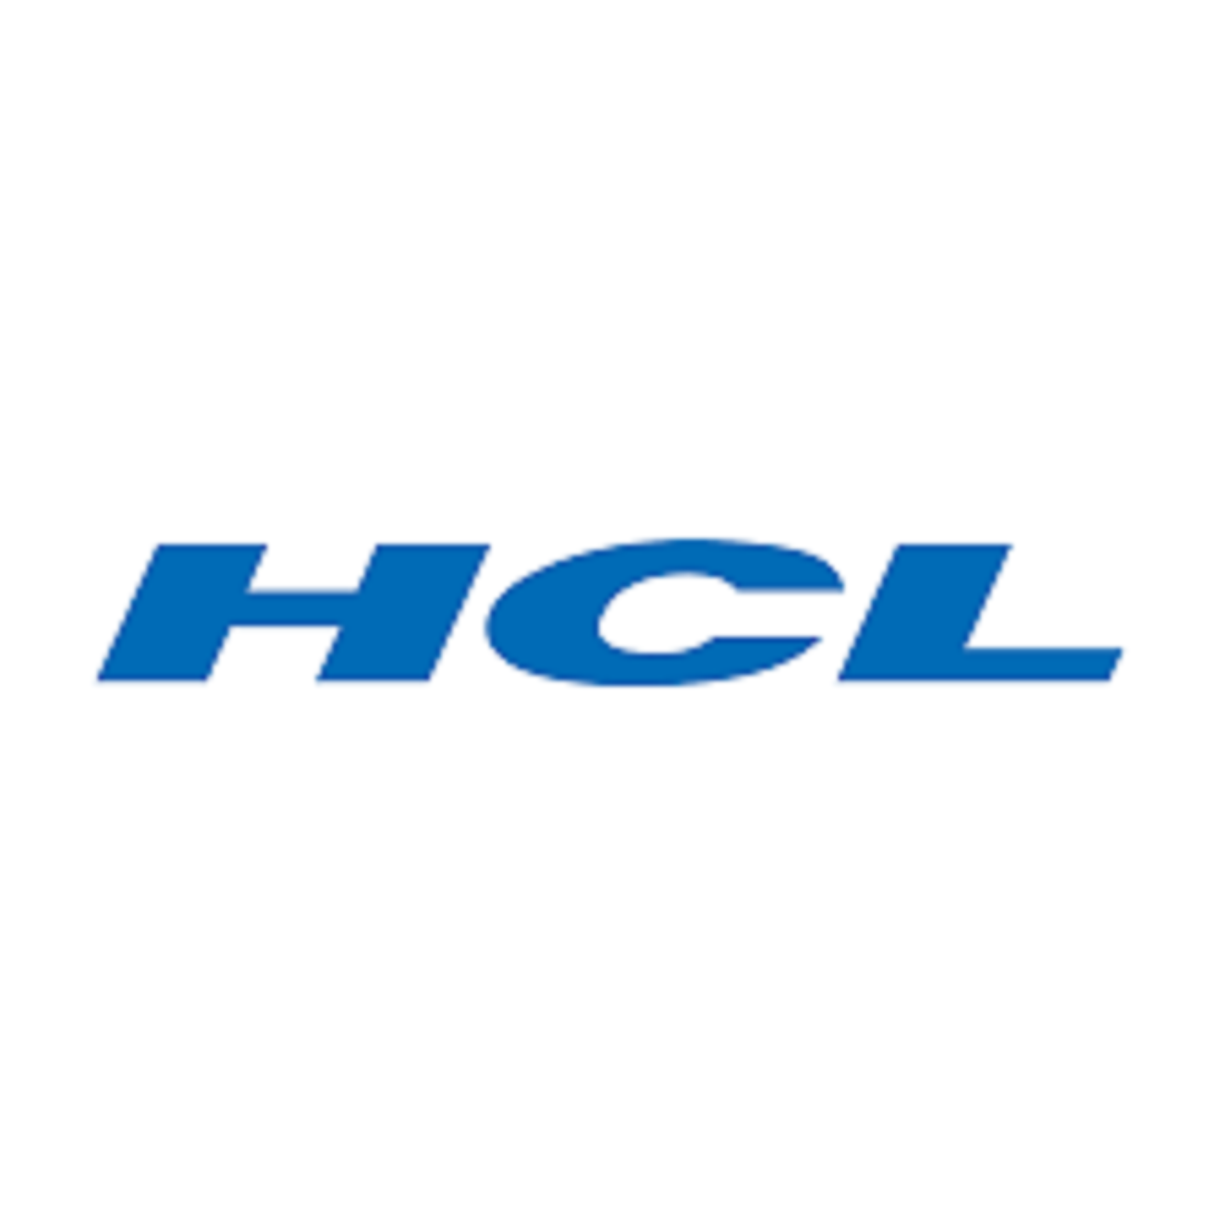 HCL Technologies Recruitment